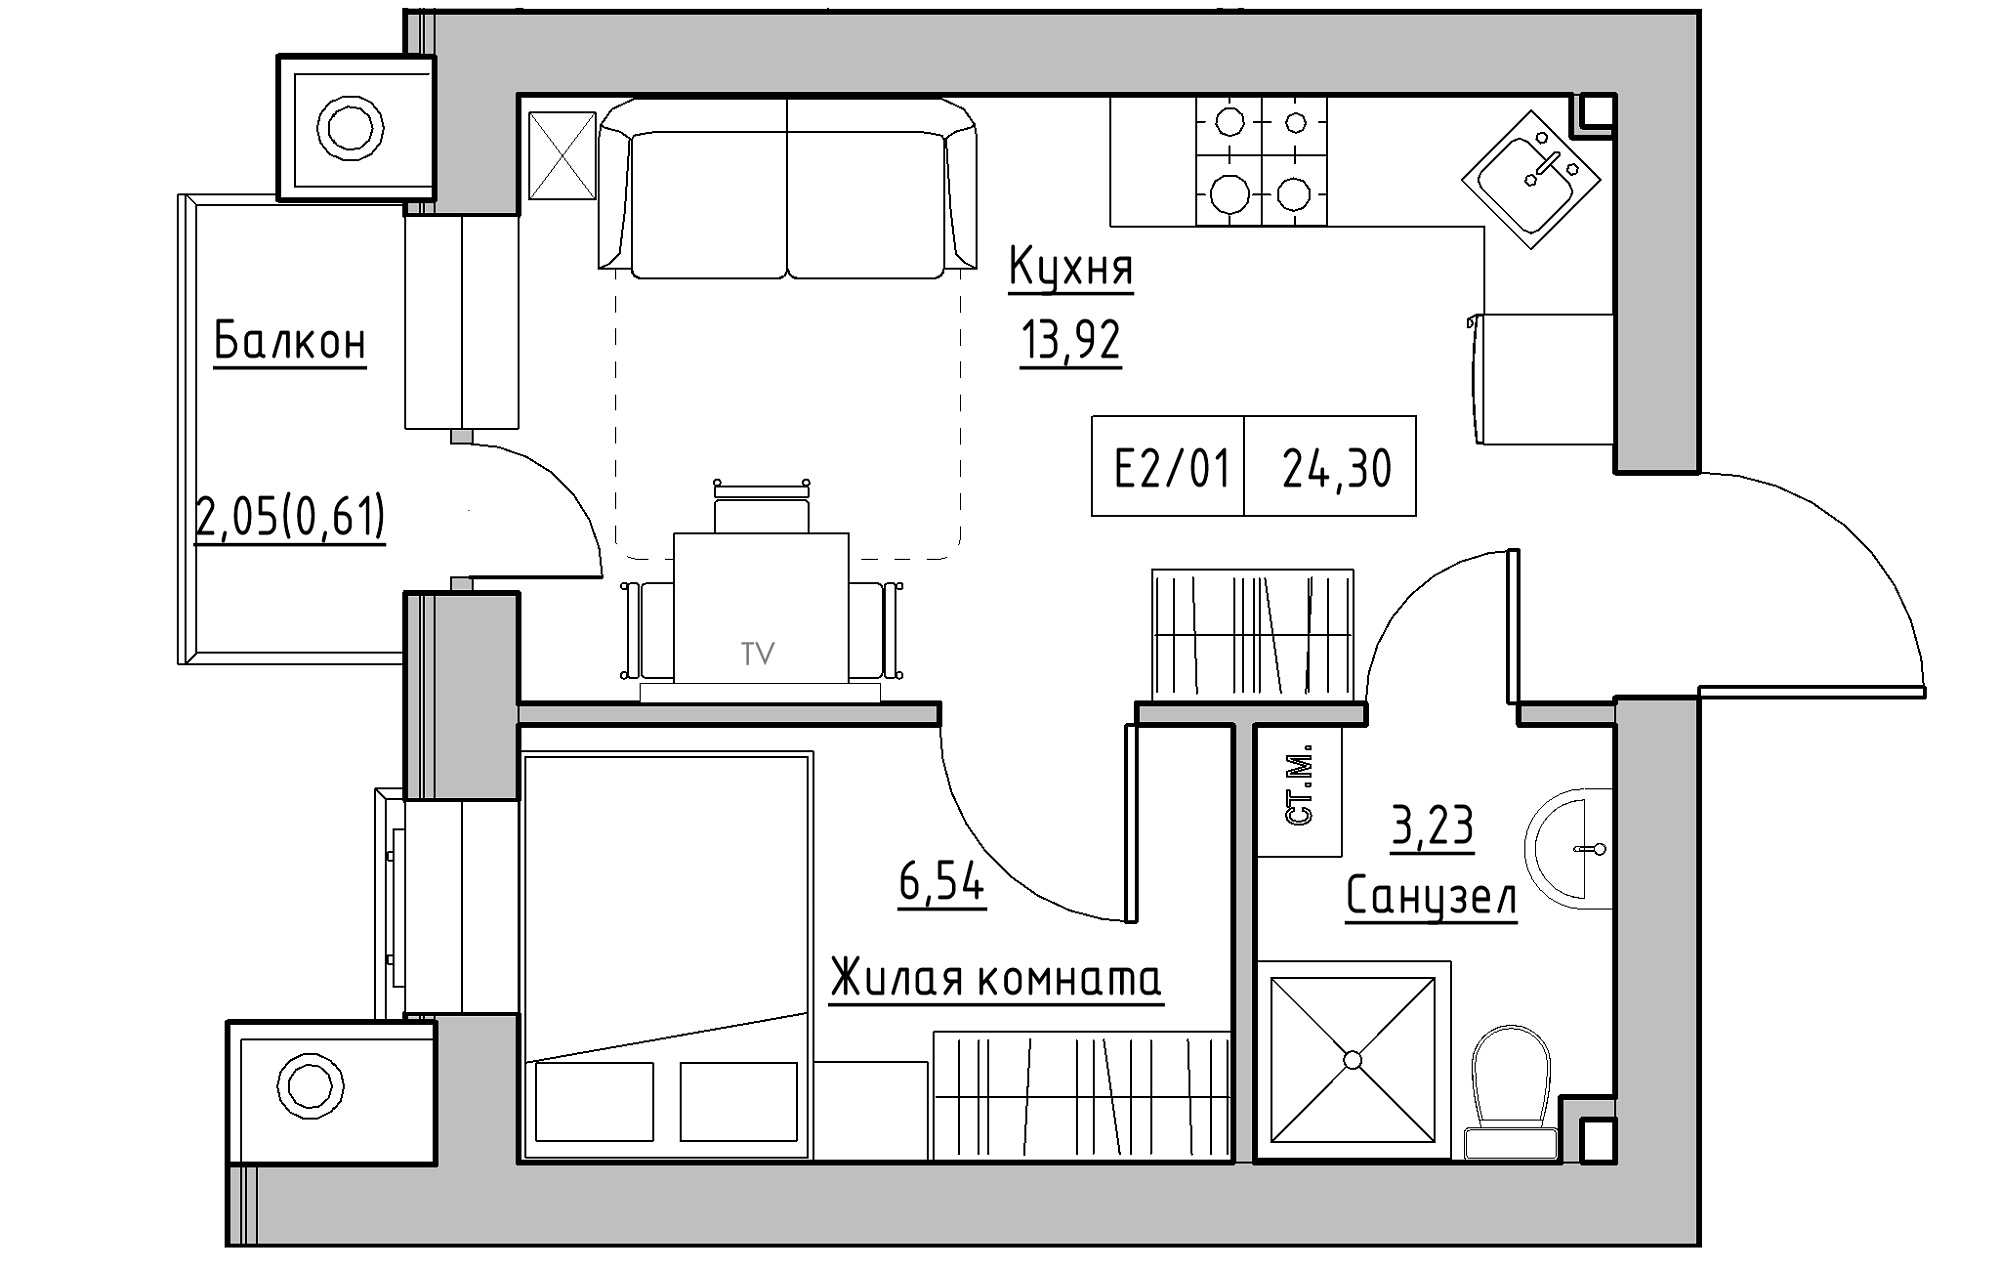 Планировка 1-к квартира площей 24.3м2, KS-013-04/0005.